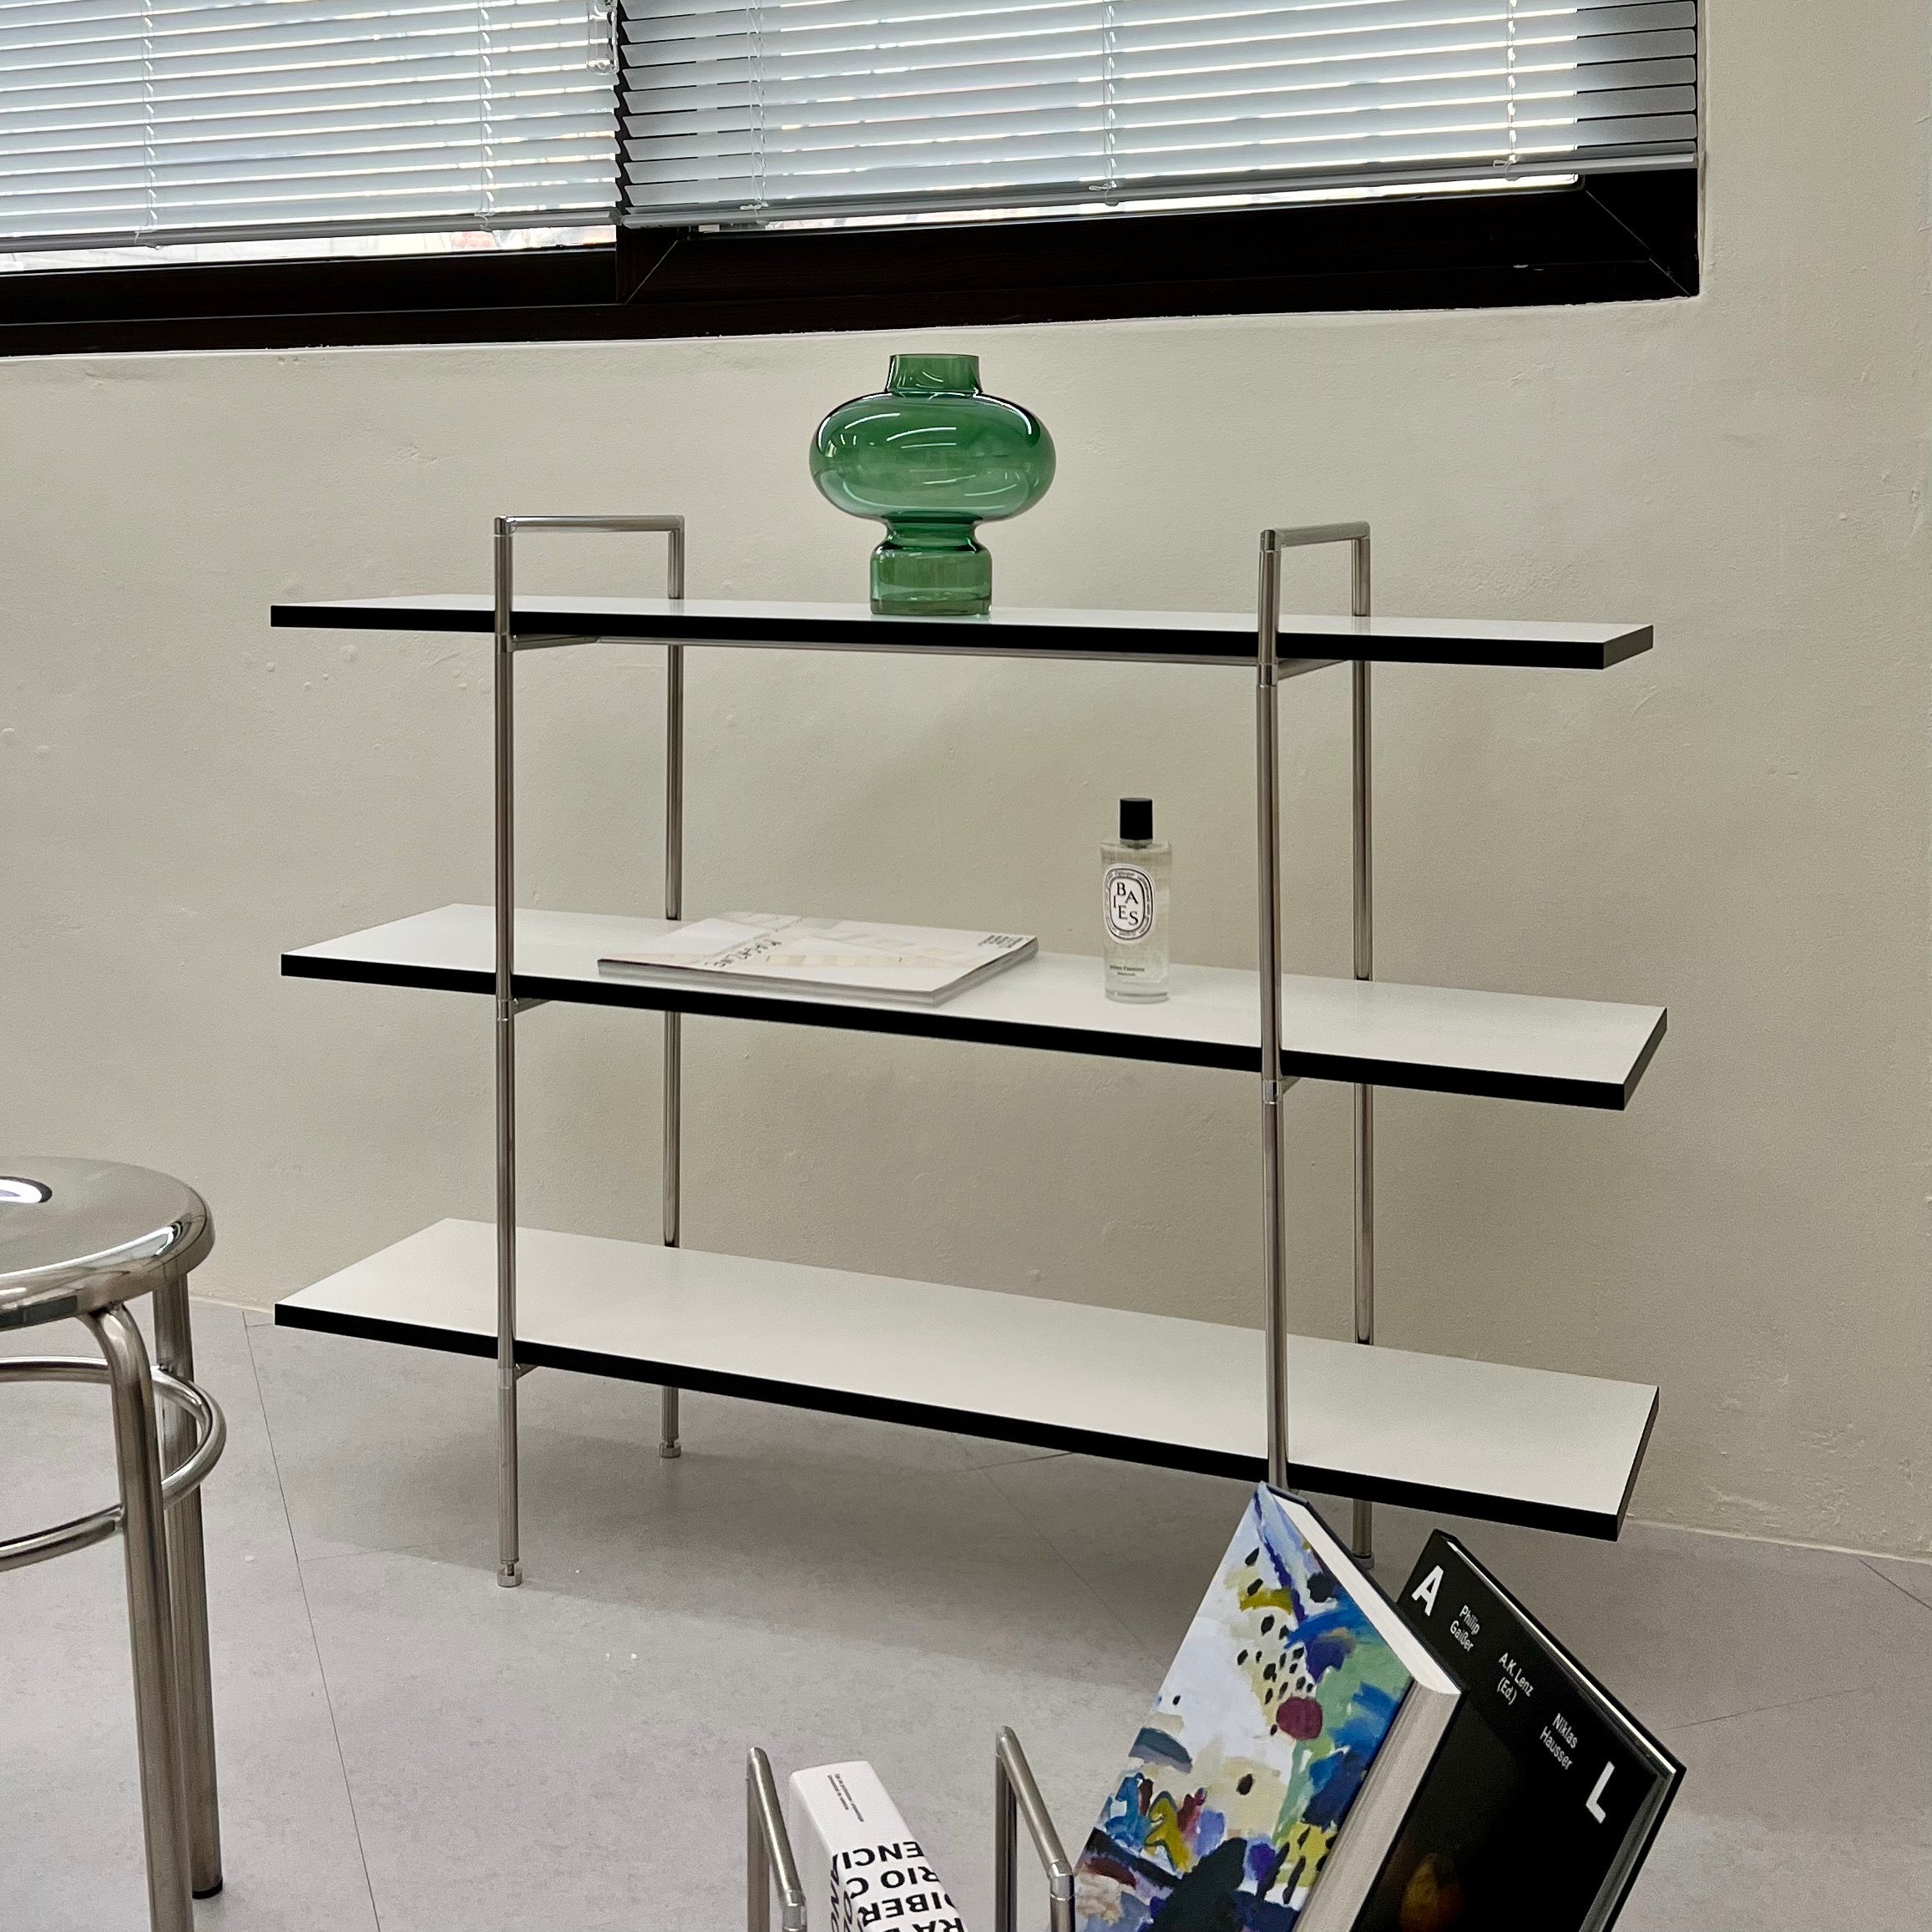 【OEN furniture】Tool Shelf ツールシェルフモノトーンインテリア